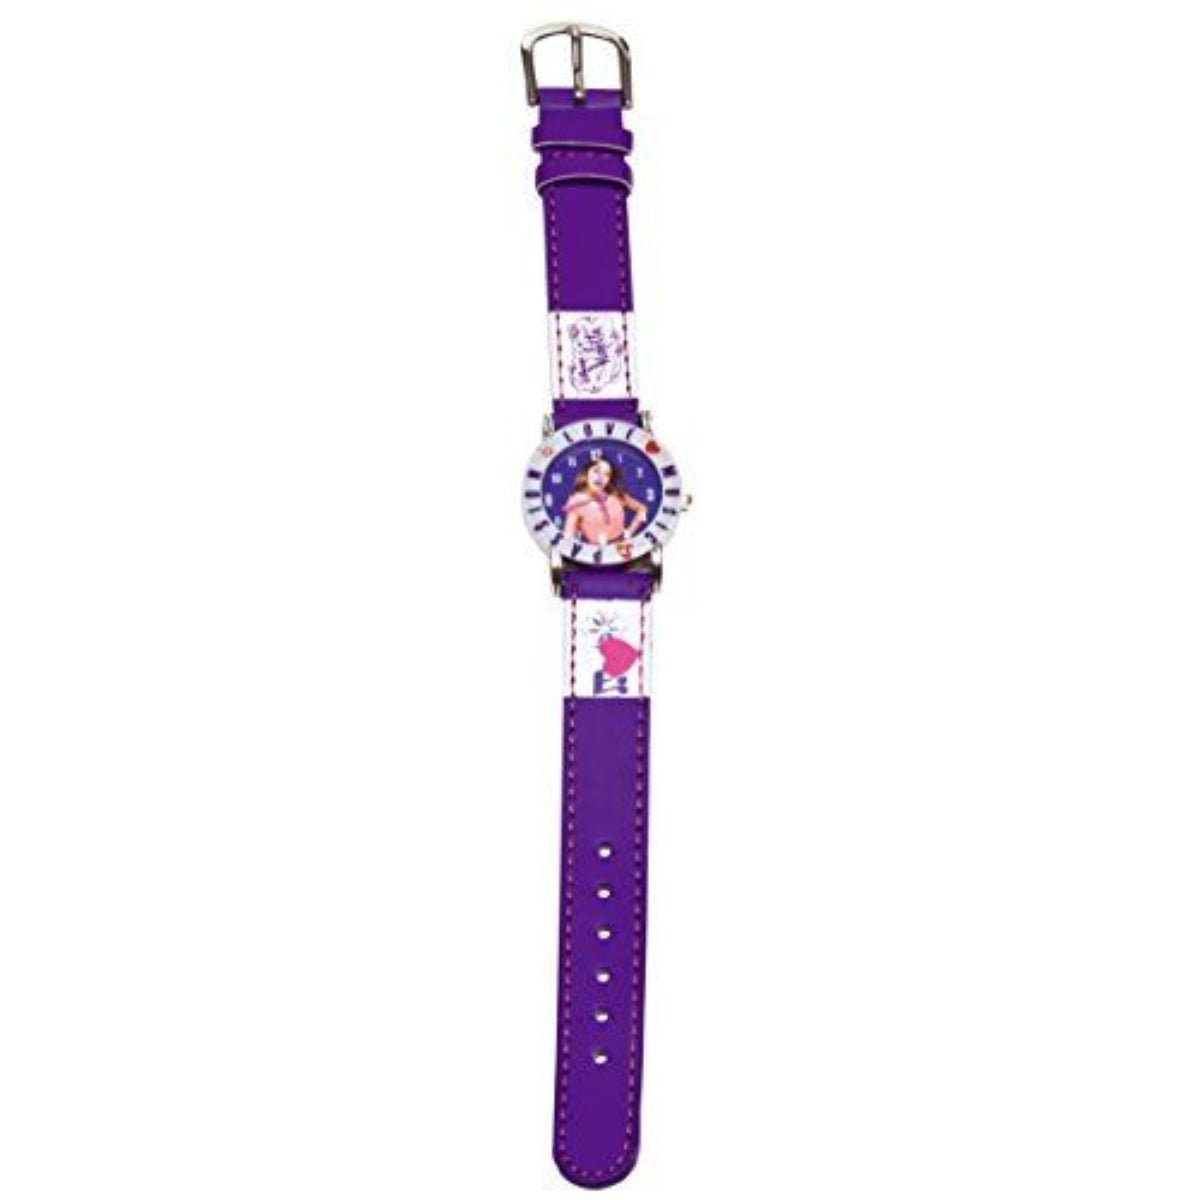 Disney Violetta Watch - Kids Party Craft